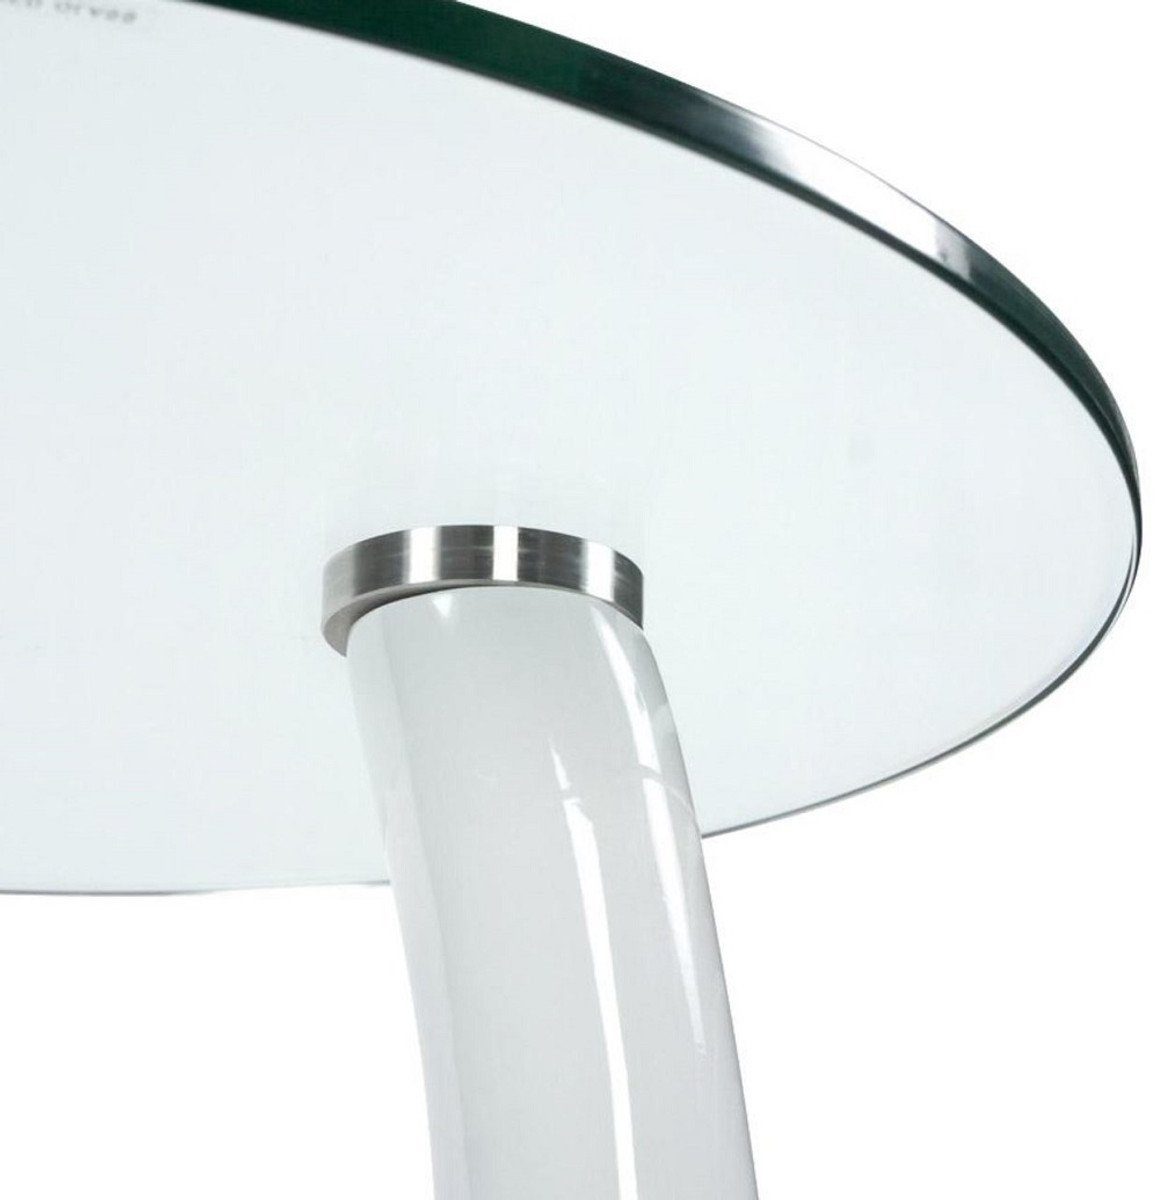 mit Beistelltisch Glasplatte Tisch Weiß H. x 45 runder cm Beistelltisch 54 Casa - Designermöbel Ø Fiberglas - Padrino Moderner